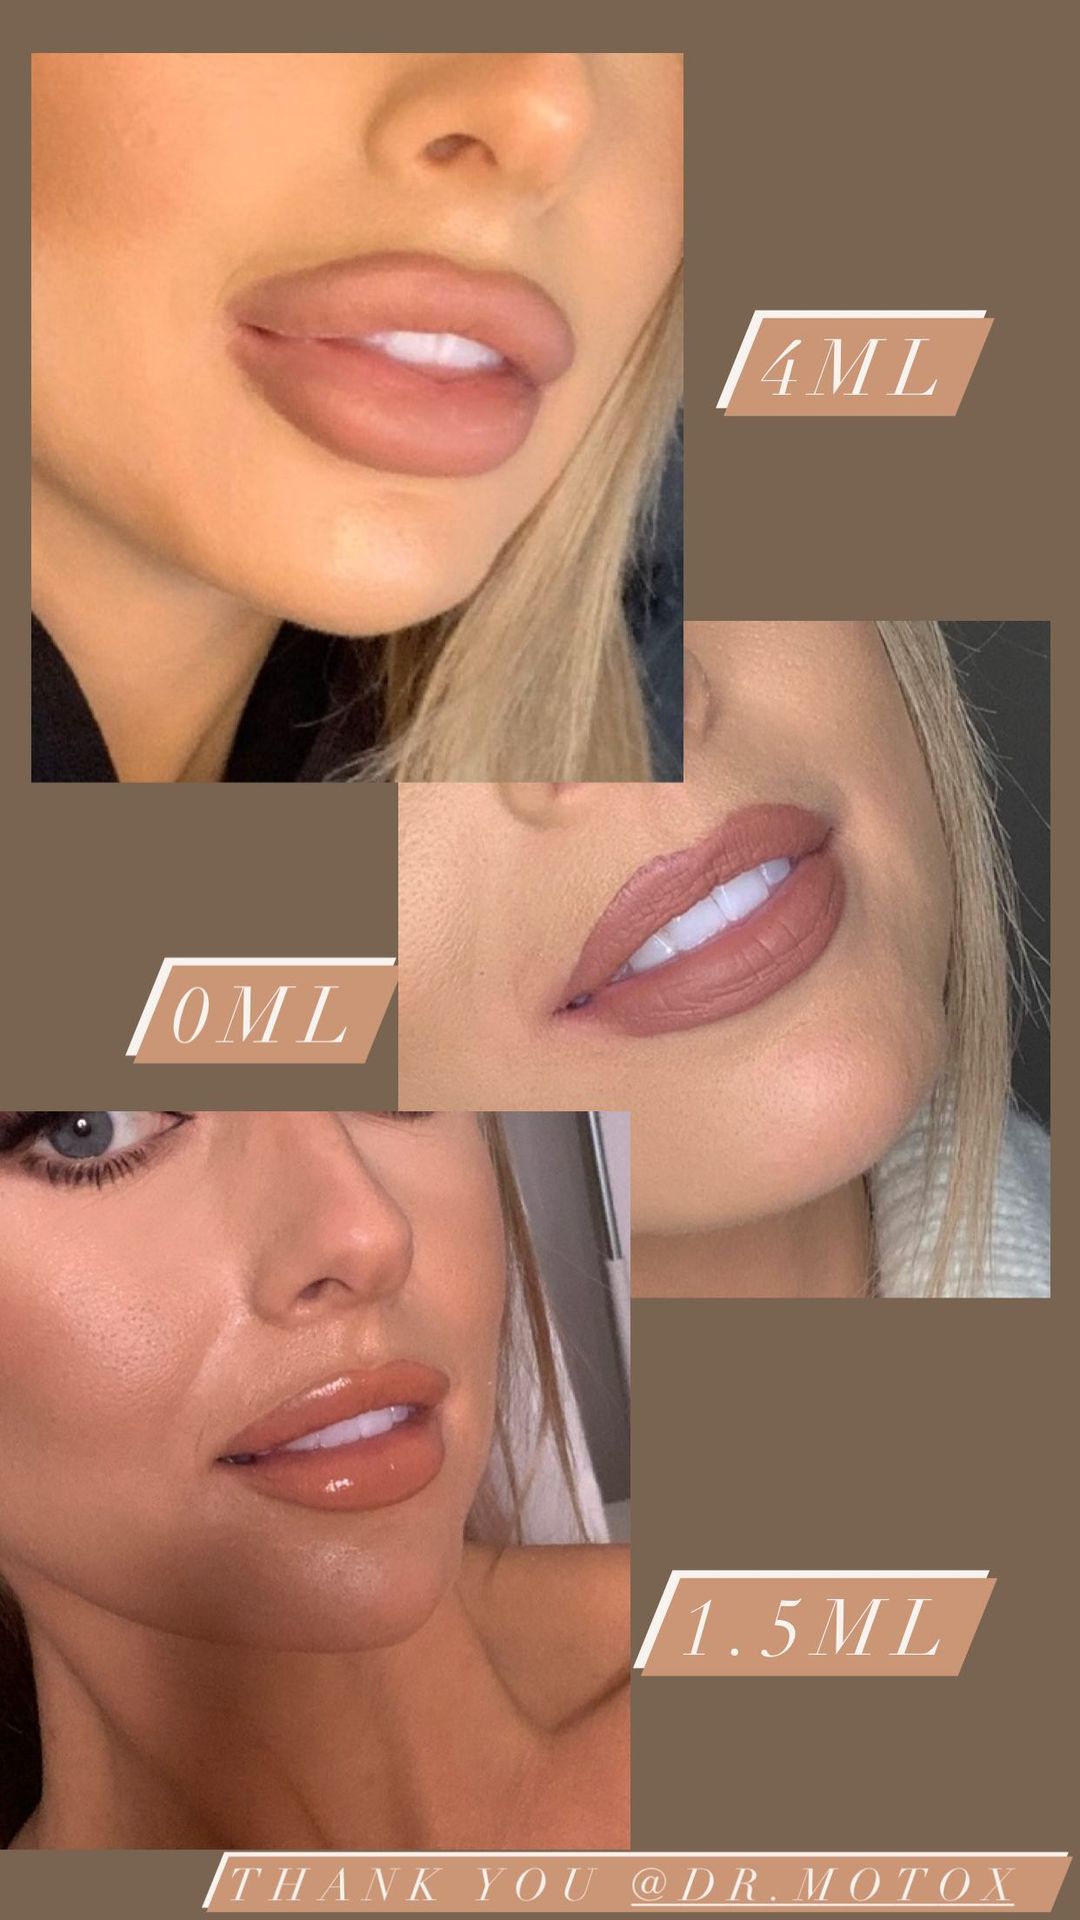 Fayes Lippenverwandlung von oben (vorher) über deren Auflösung (Mitte) bis hin zu neueren Lippen mit einer geringeren Menge Füllmaterial (unten)